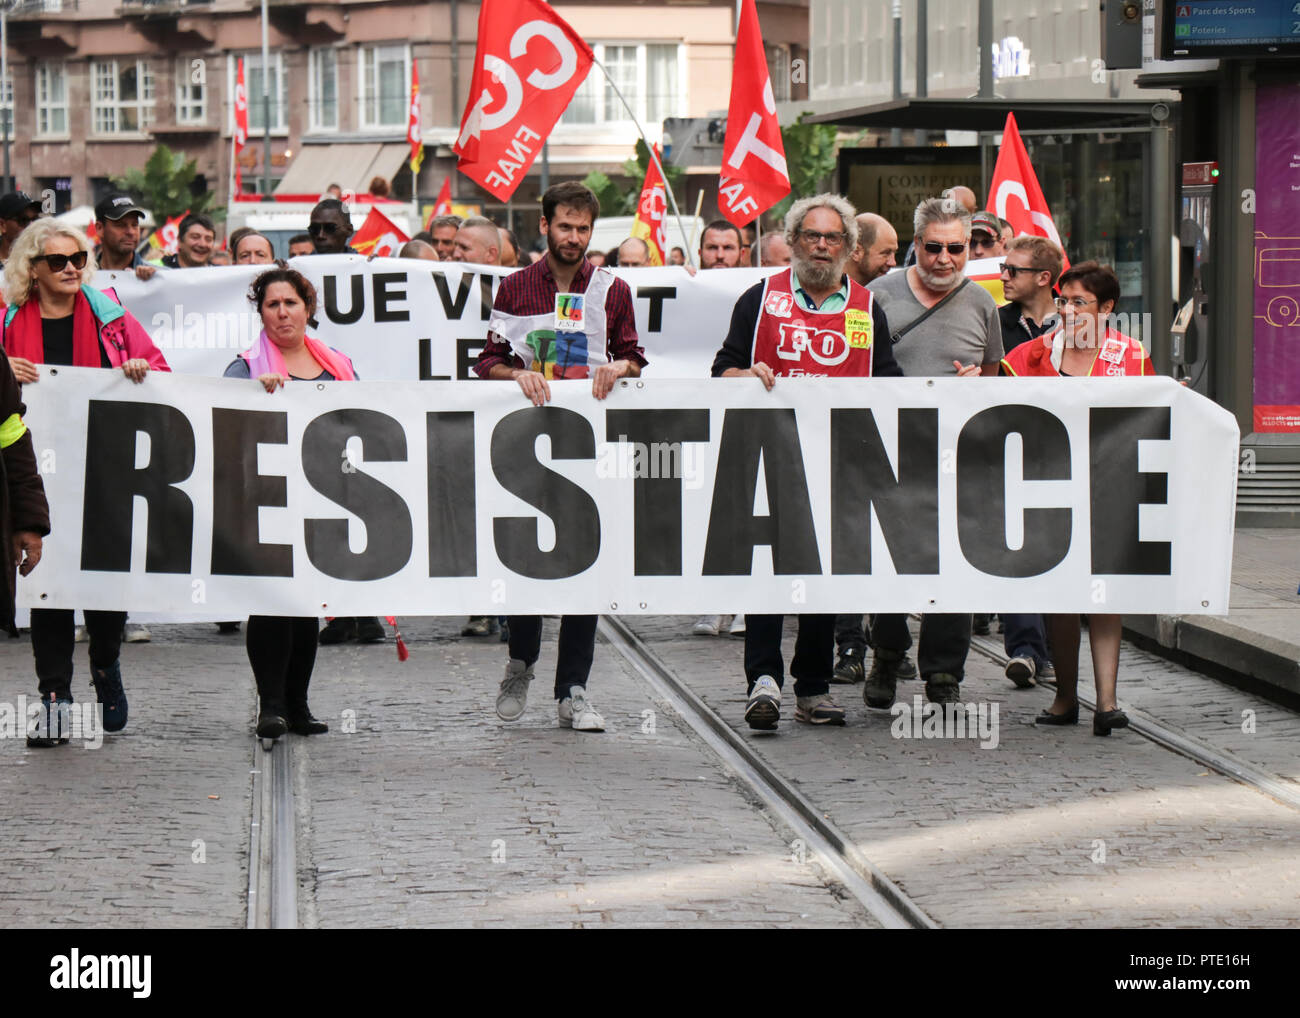 Protesta y resistencia política